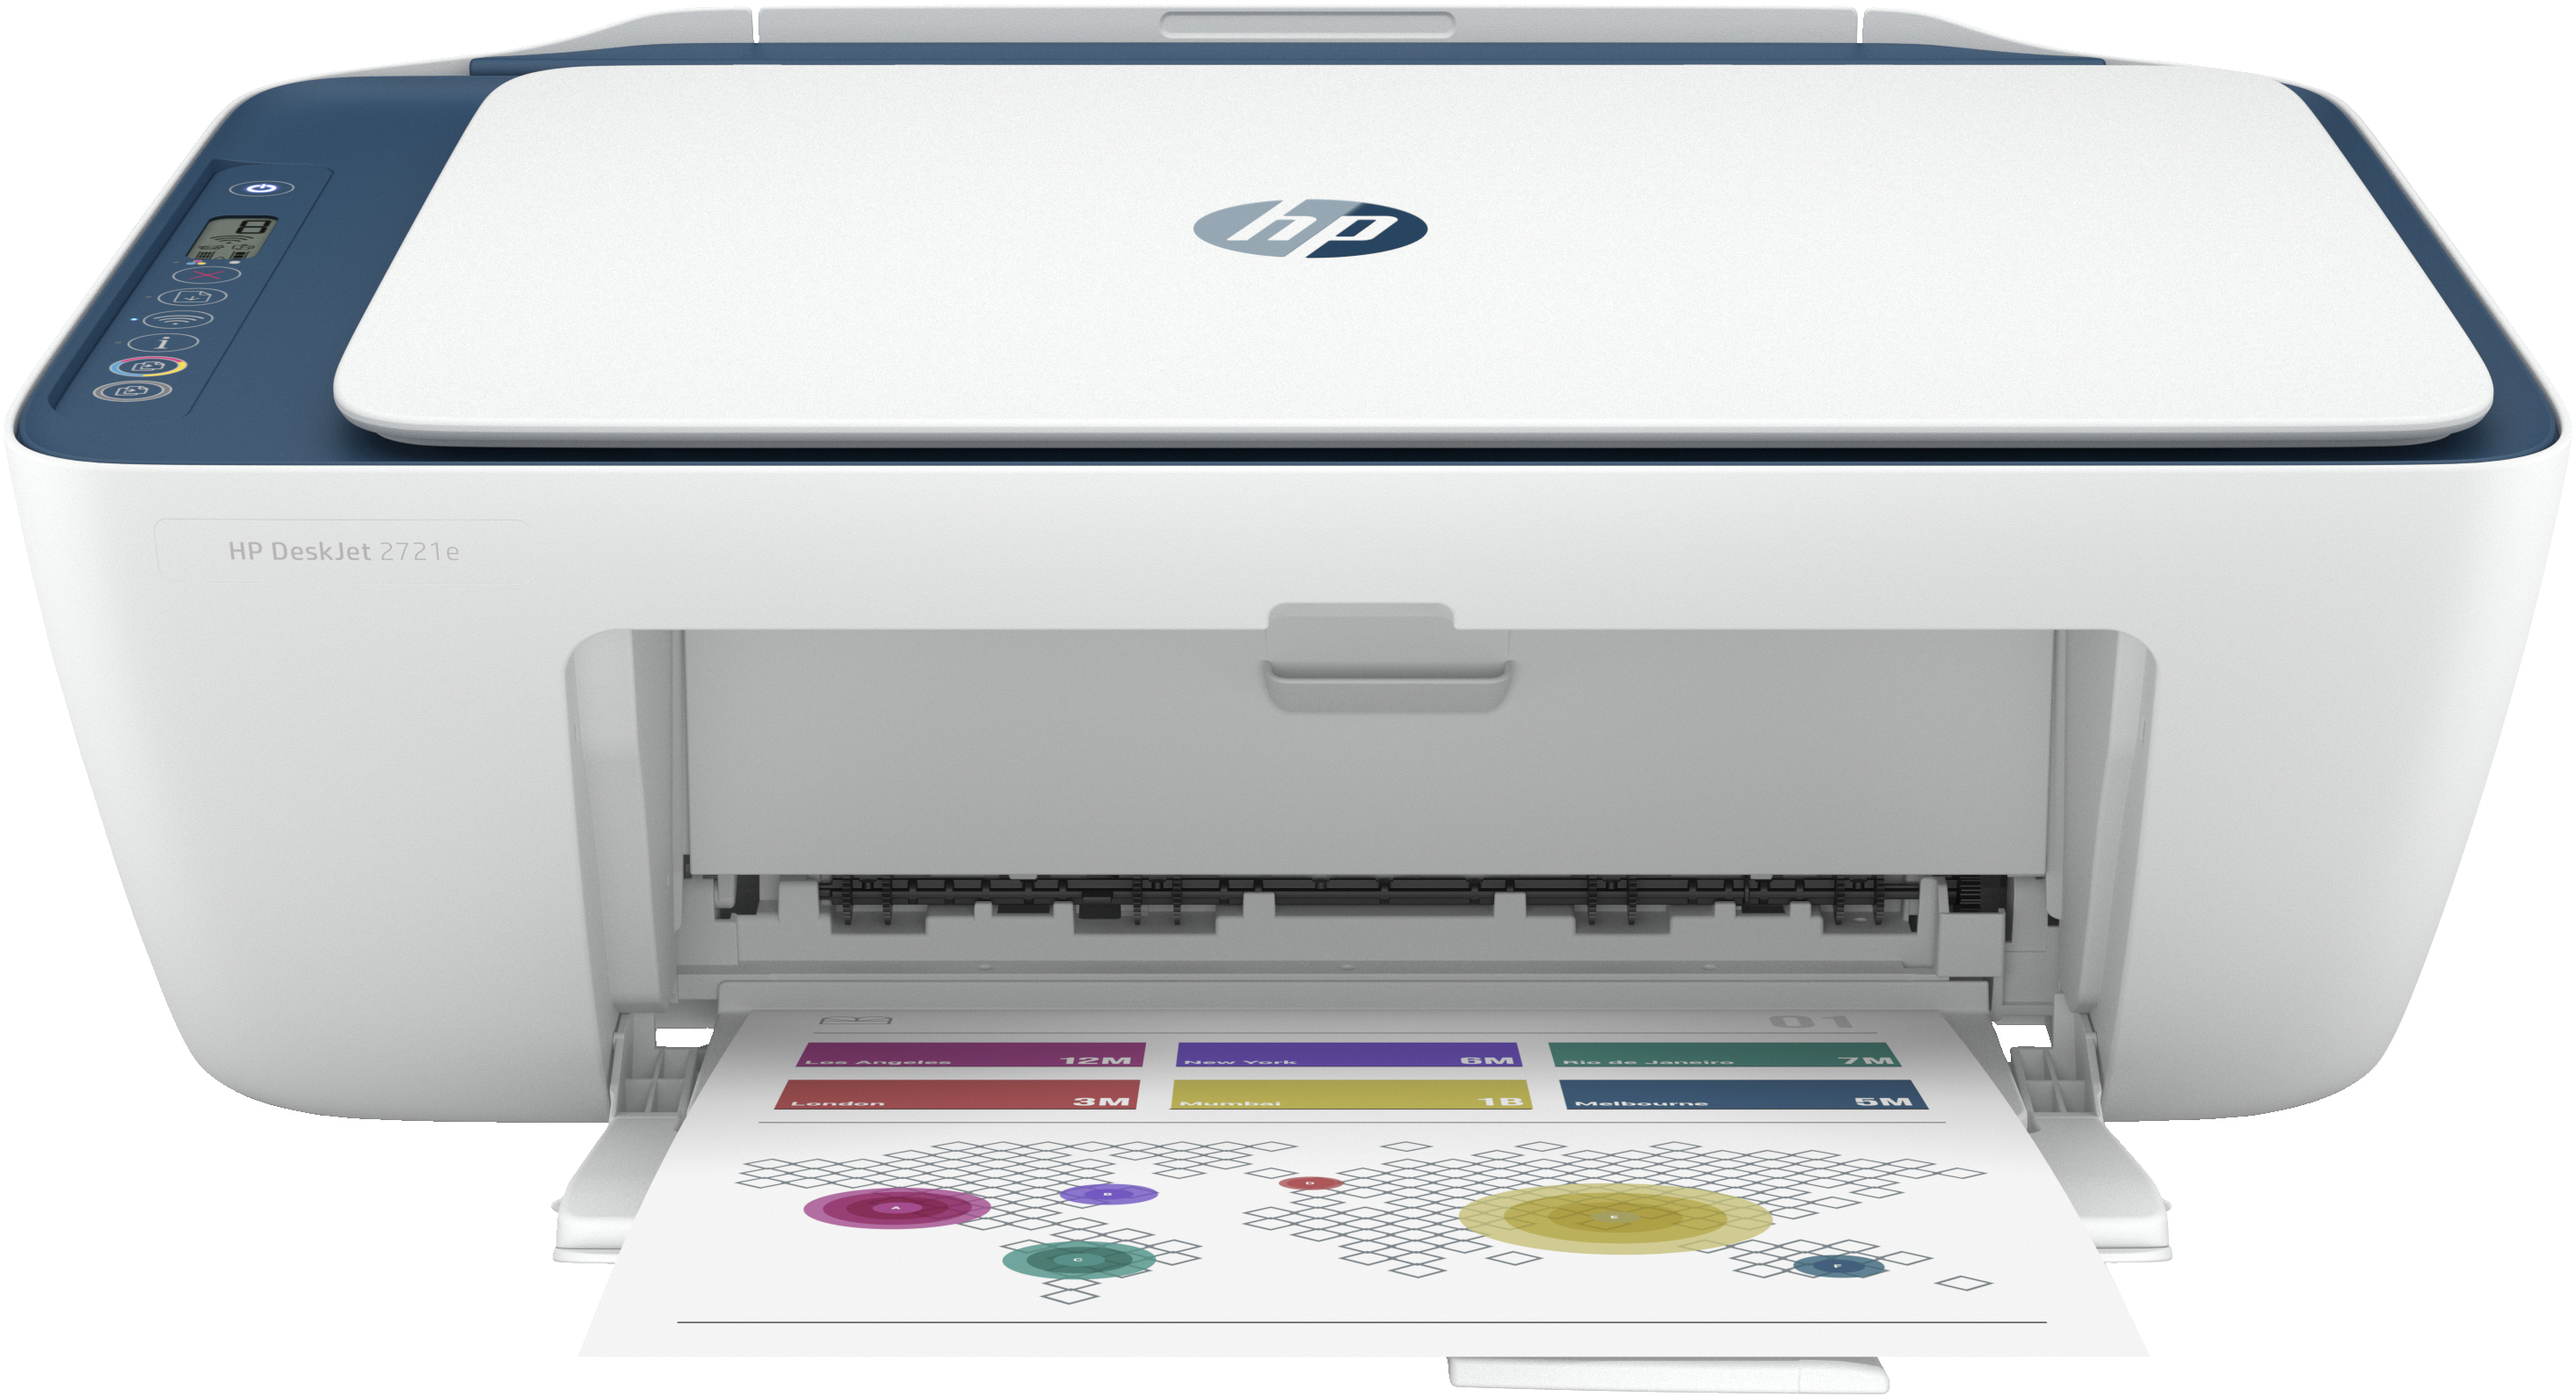 HP Imprimante Tout-en-un HP DeskJet 2721e, Couleur, Imprimante pour Domicile, Impression, copie, numérisation, Sans fil. HP+. Éligibilité HP Instant Ink. Imprimer depuis un téléphone ou une tablette